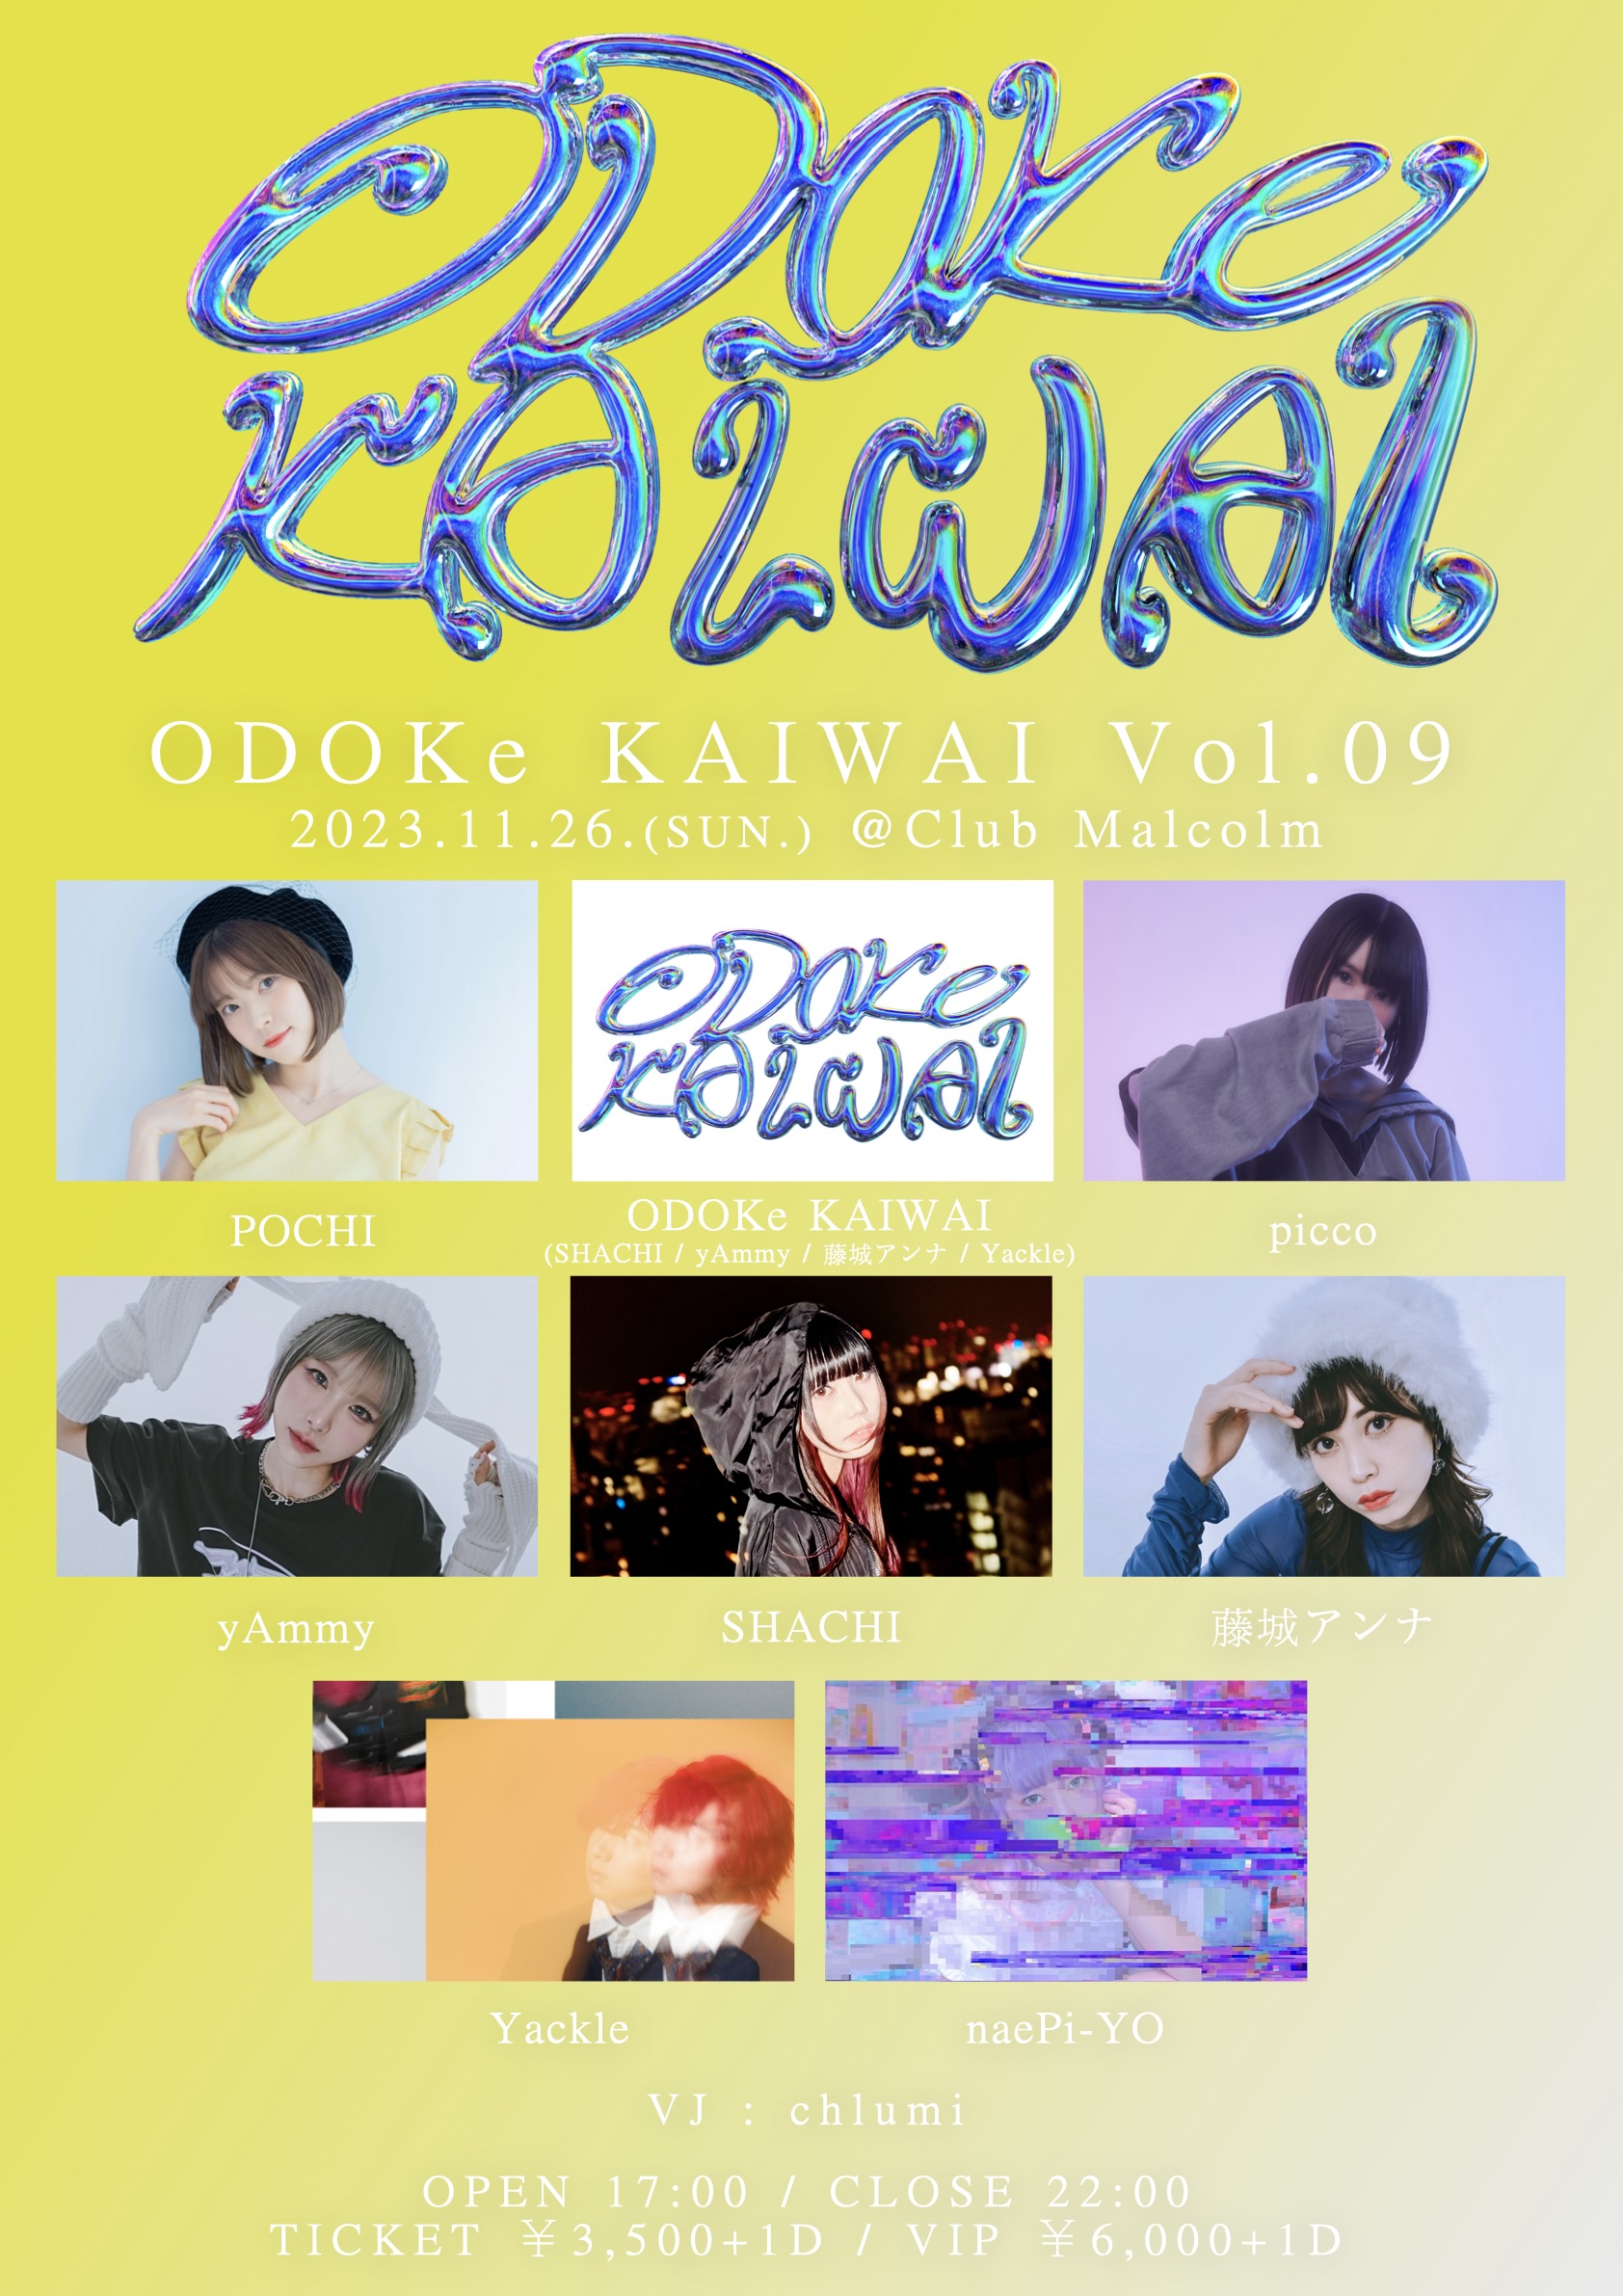 ODOKe KAIWAI Vol.09